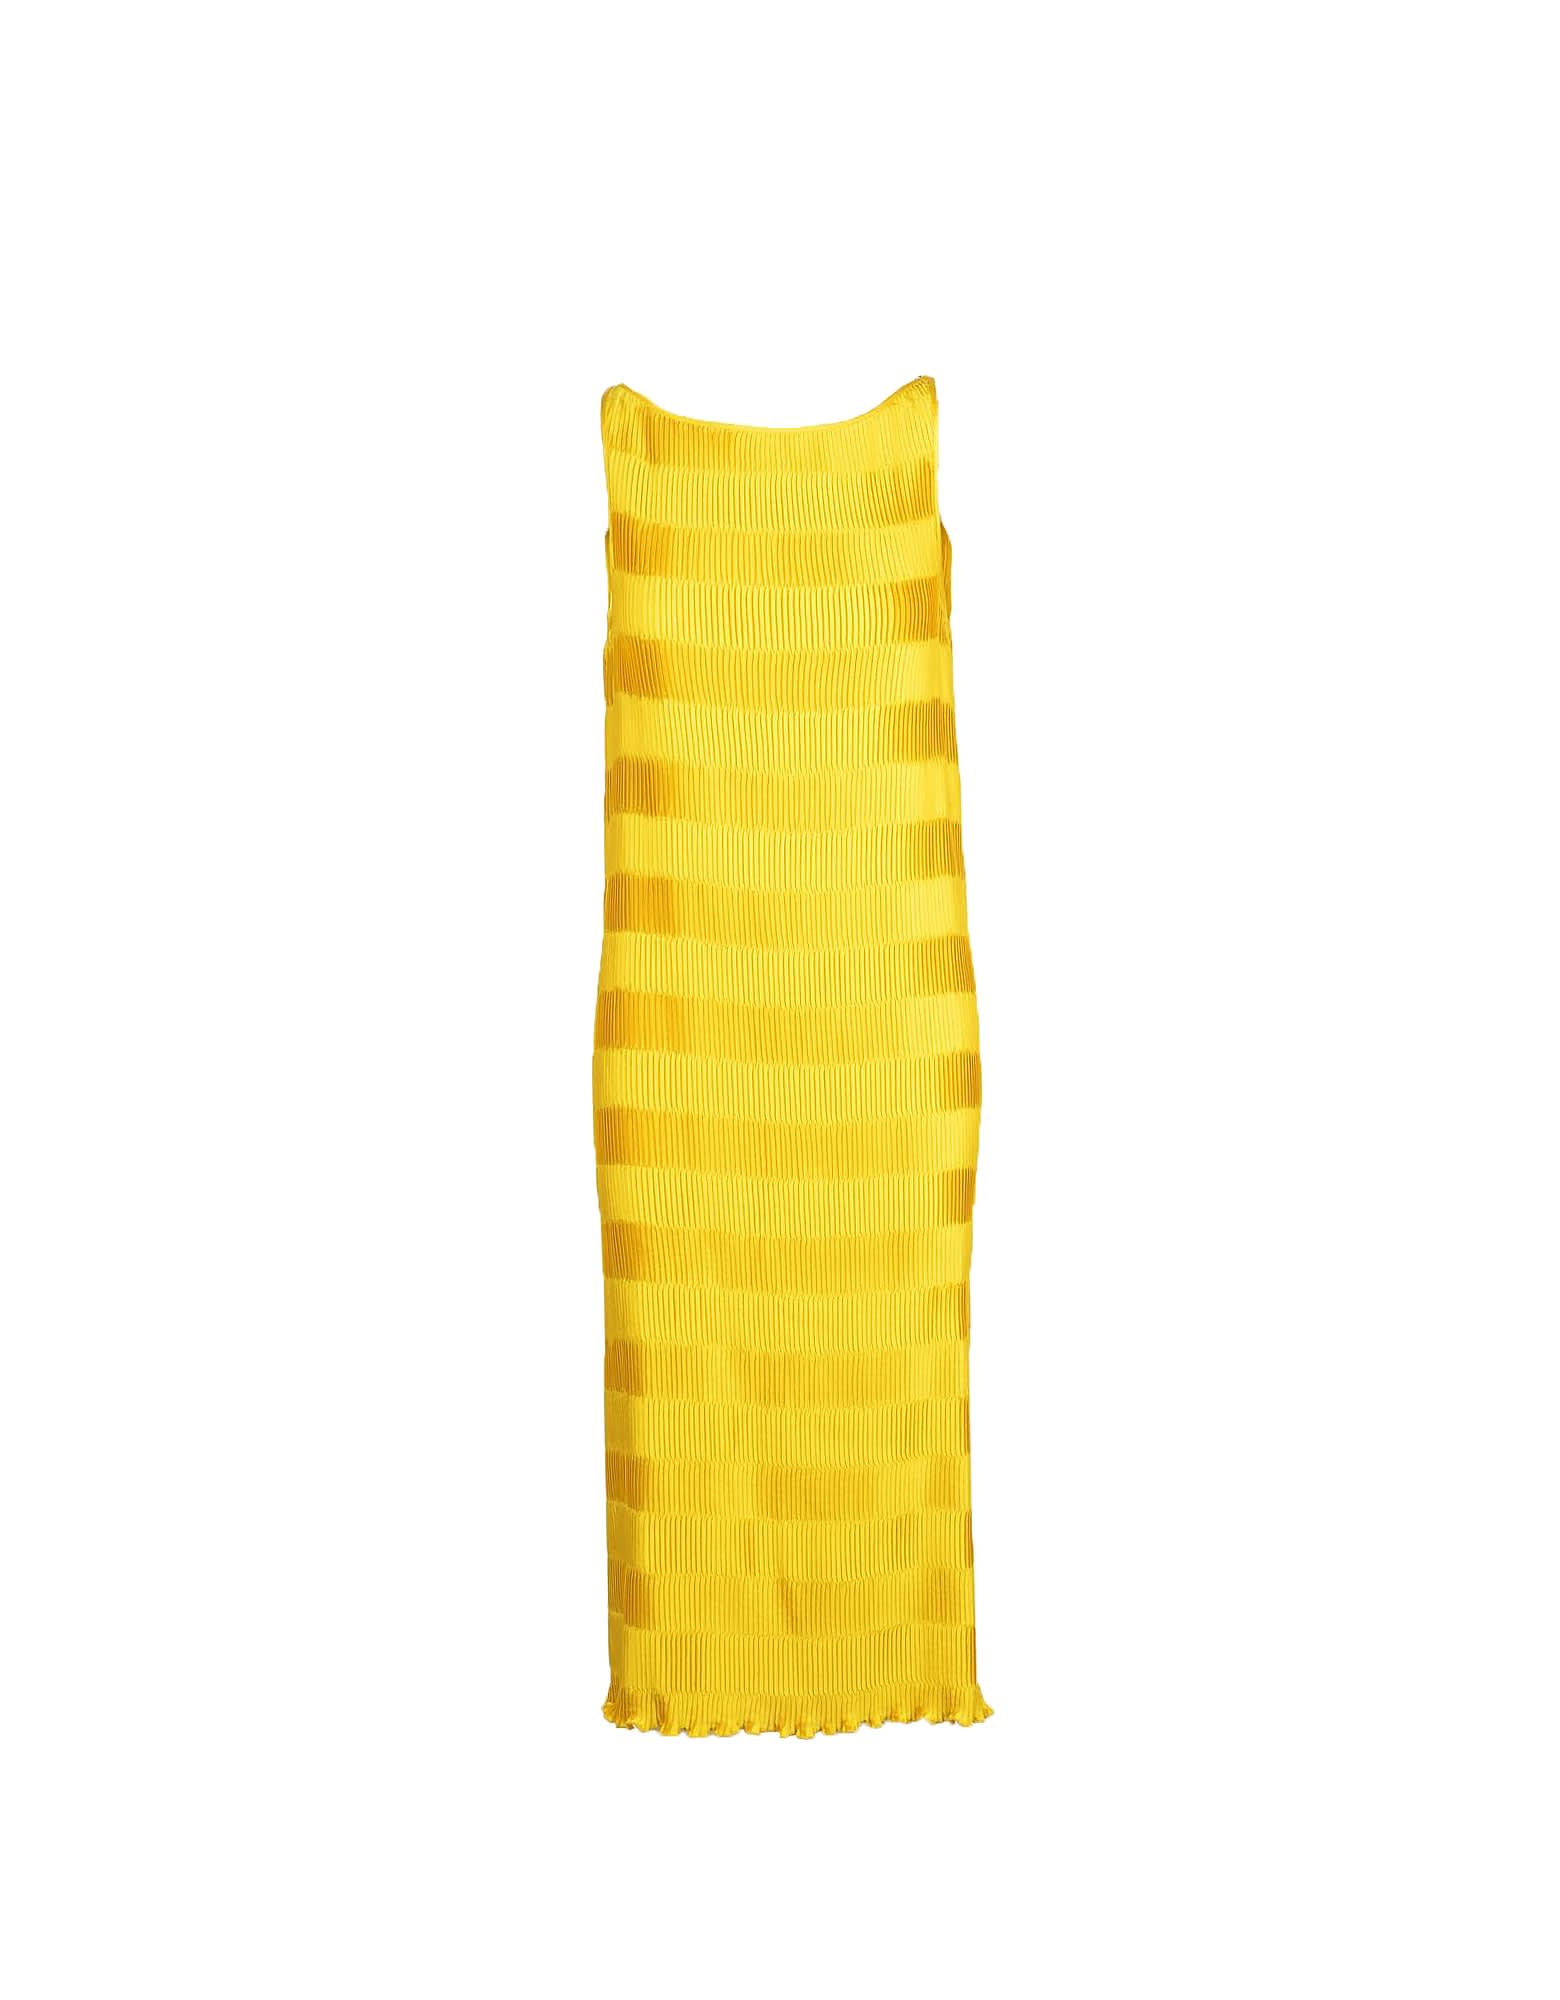 Manila Grace Womens Yellow Dress